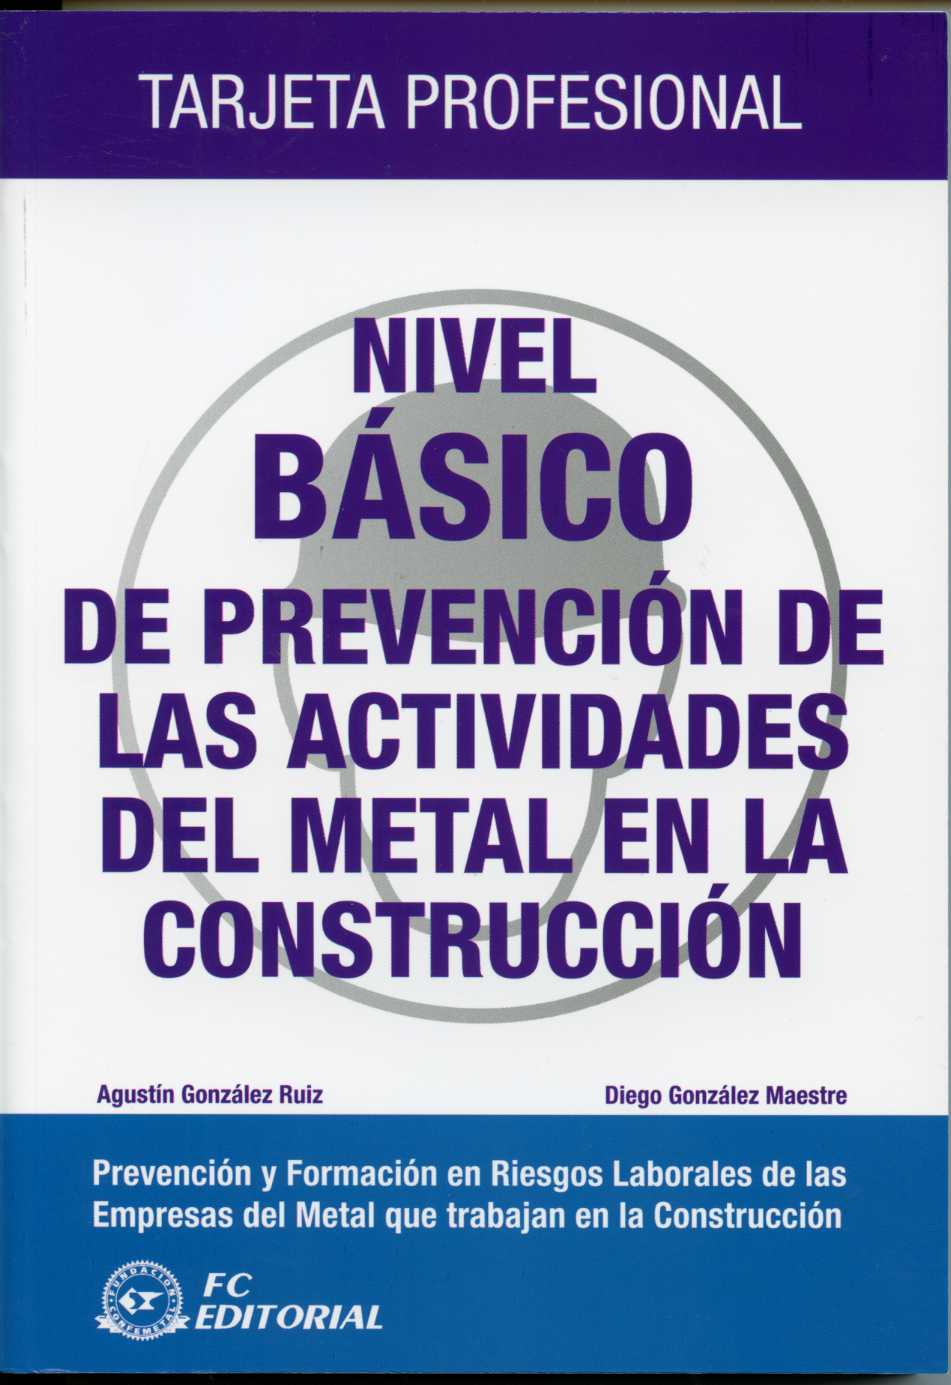 Nivel Básico de Prevención de las Actividades del Metal en la Construcción. Tarjeta Profesional.-0